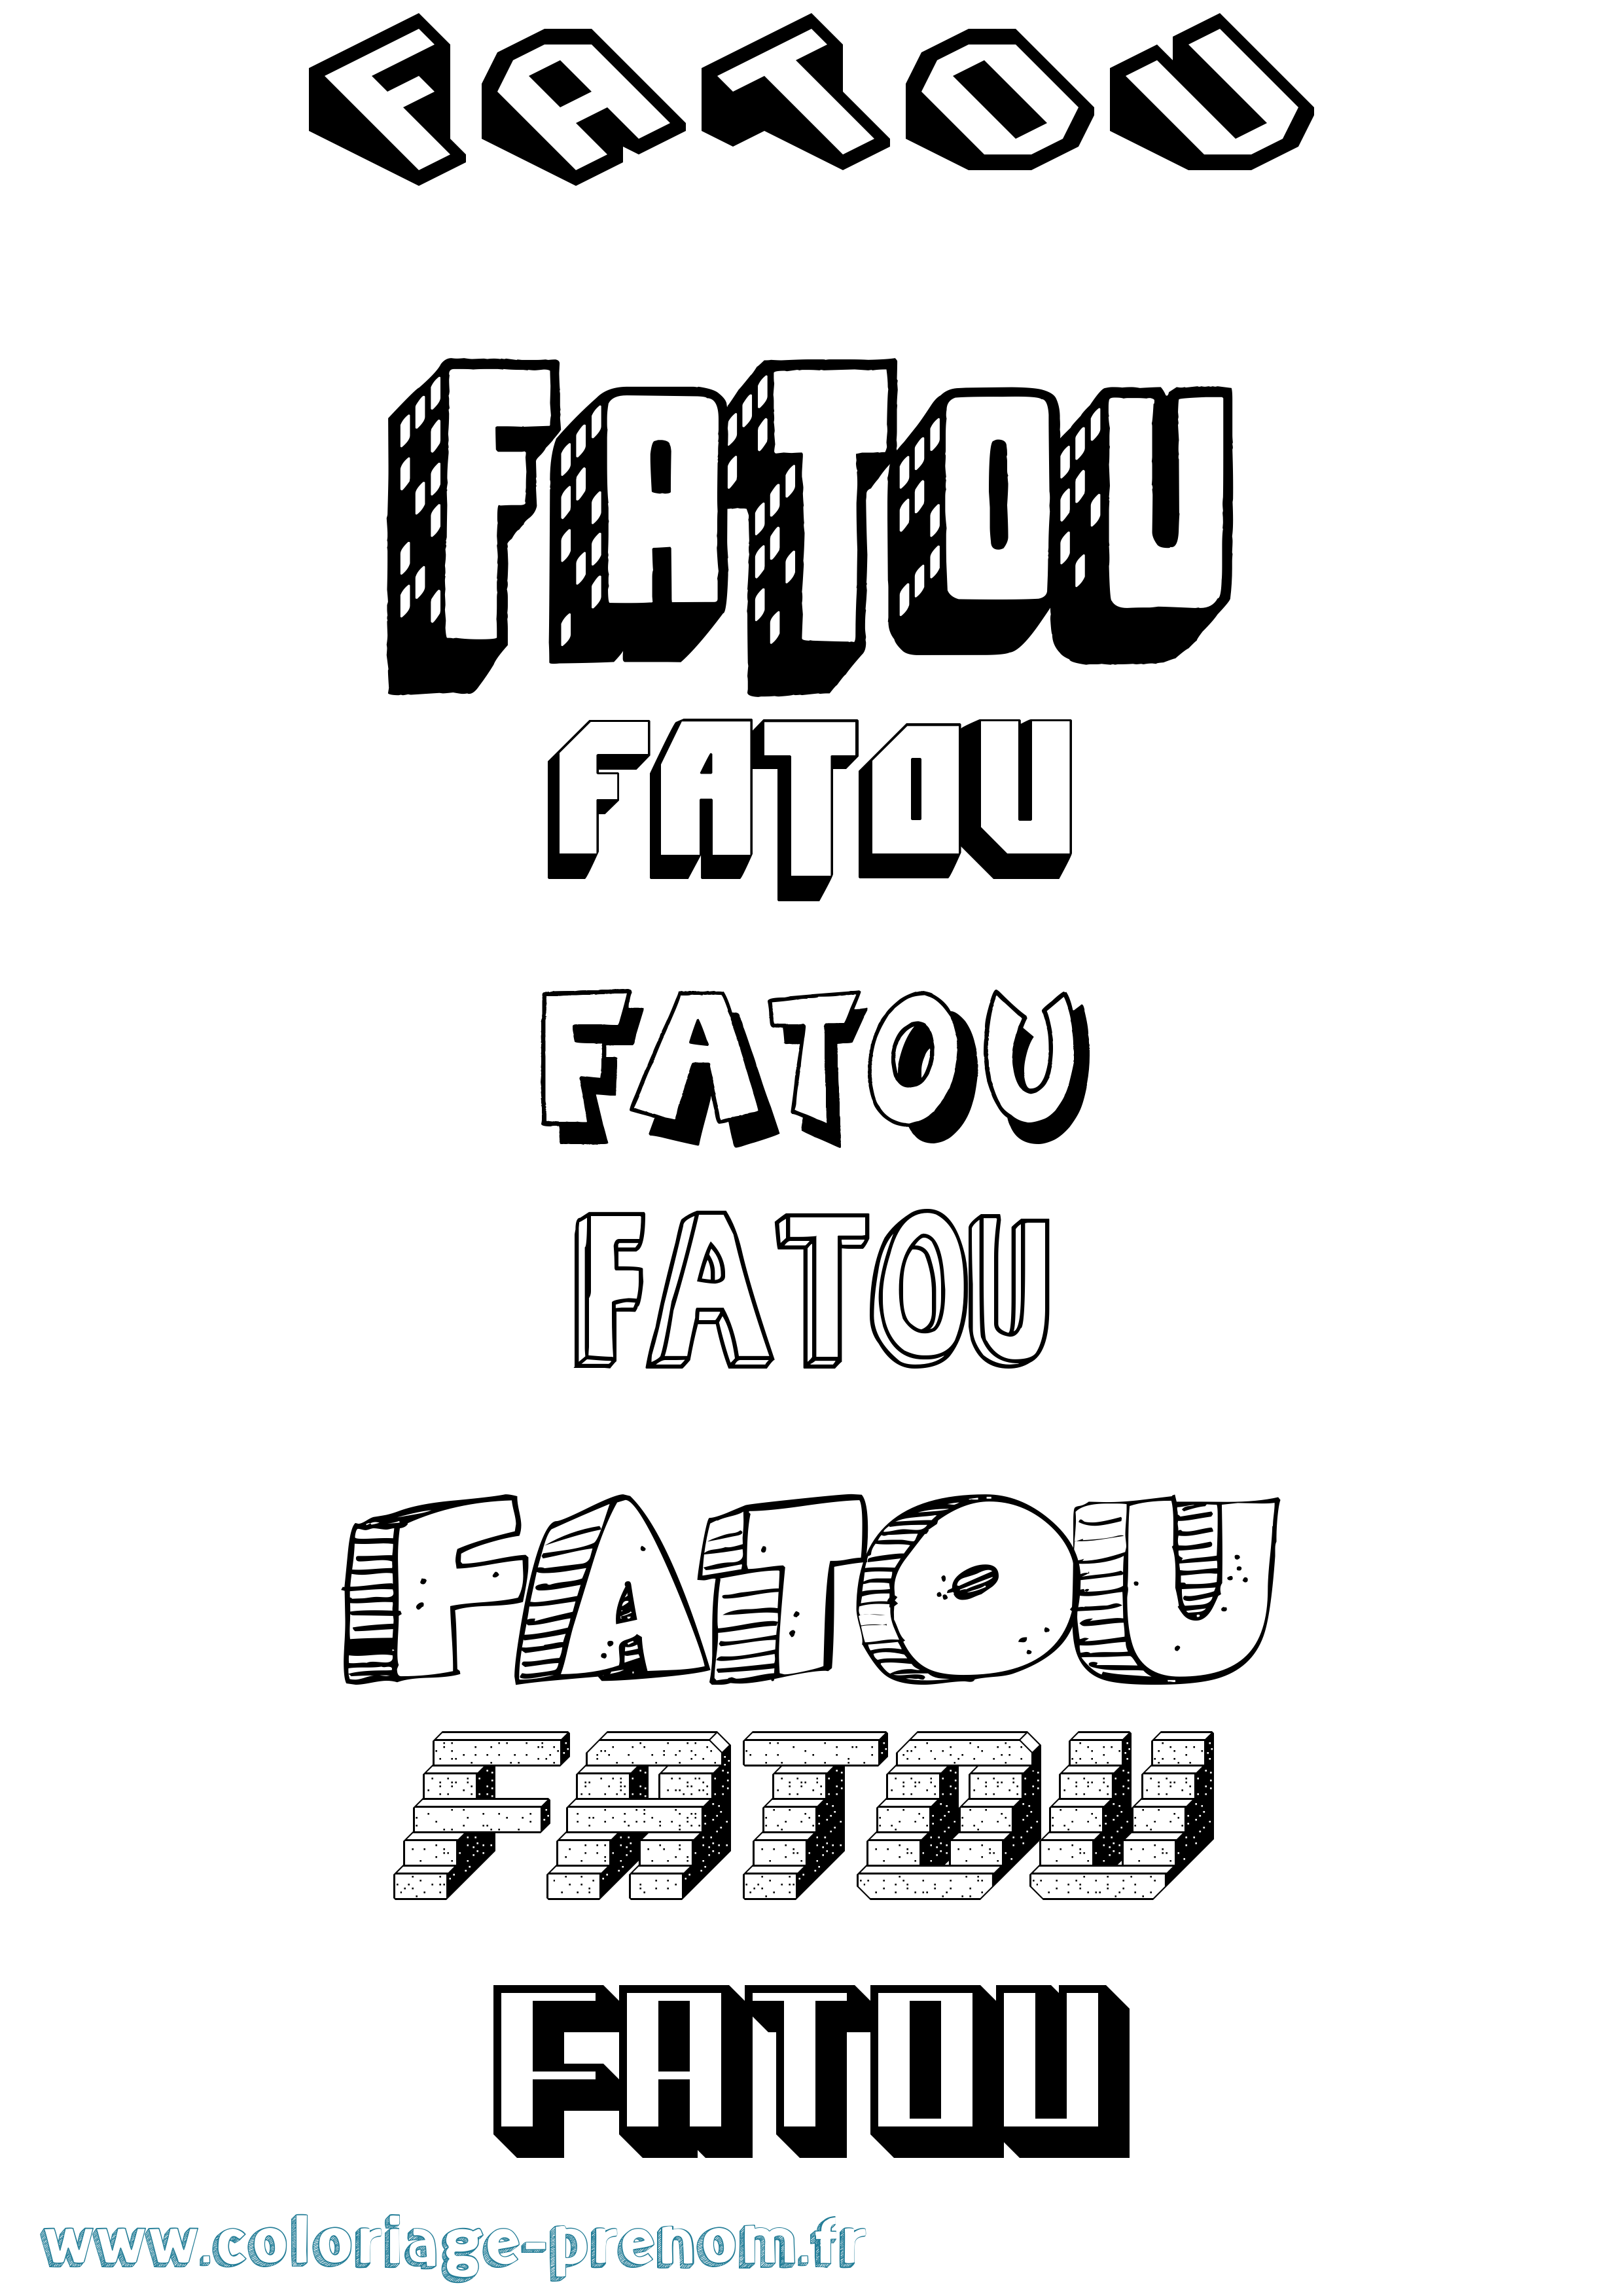 Coloriage prénom Fatou Effet 3D